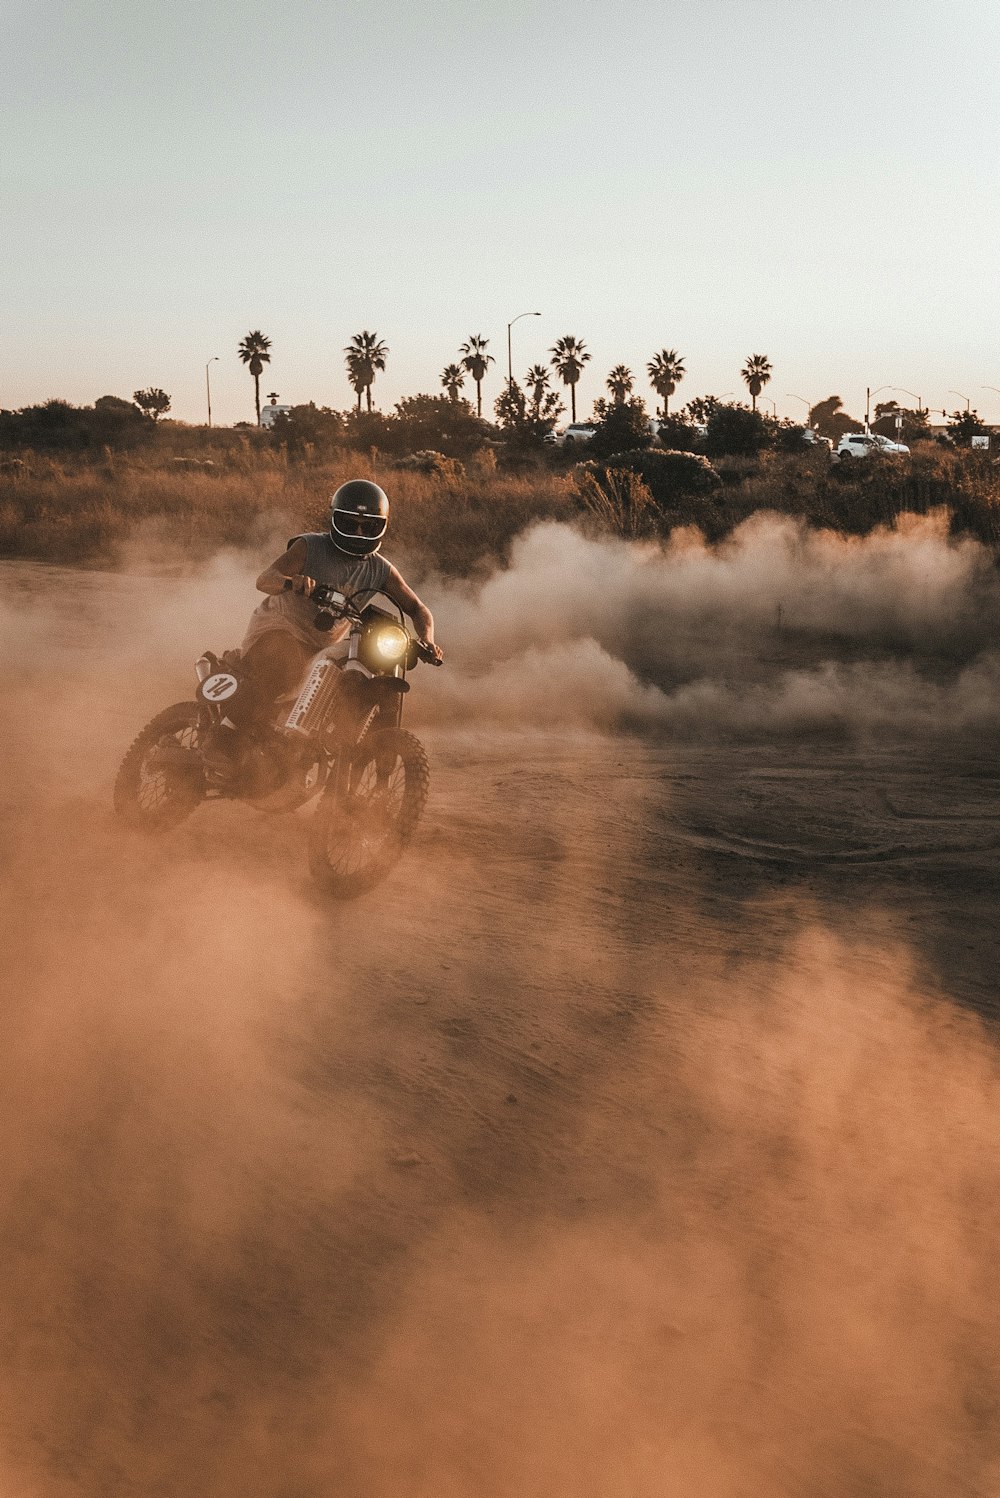 homme conduisant une moto sur un terrain brun pendant la journée